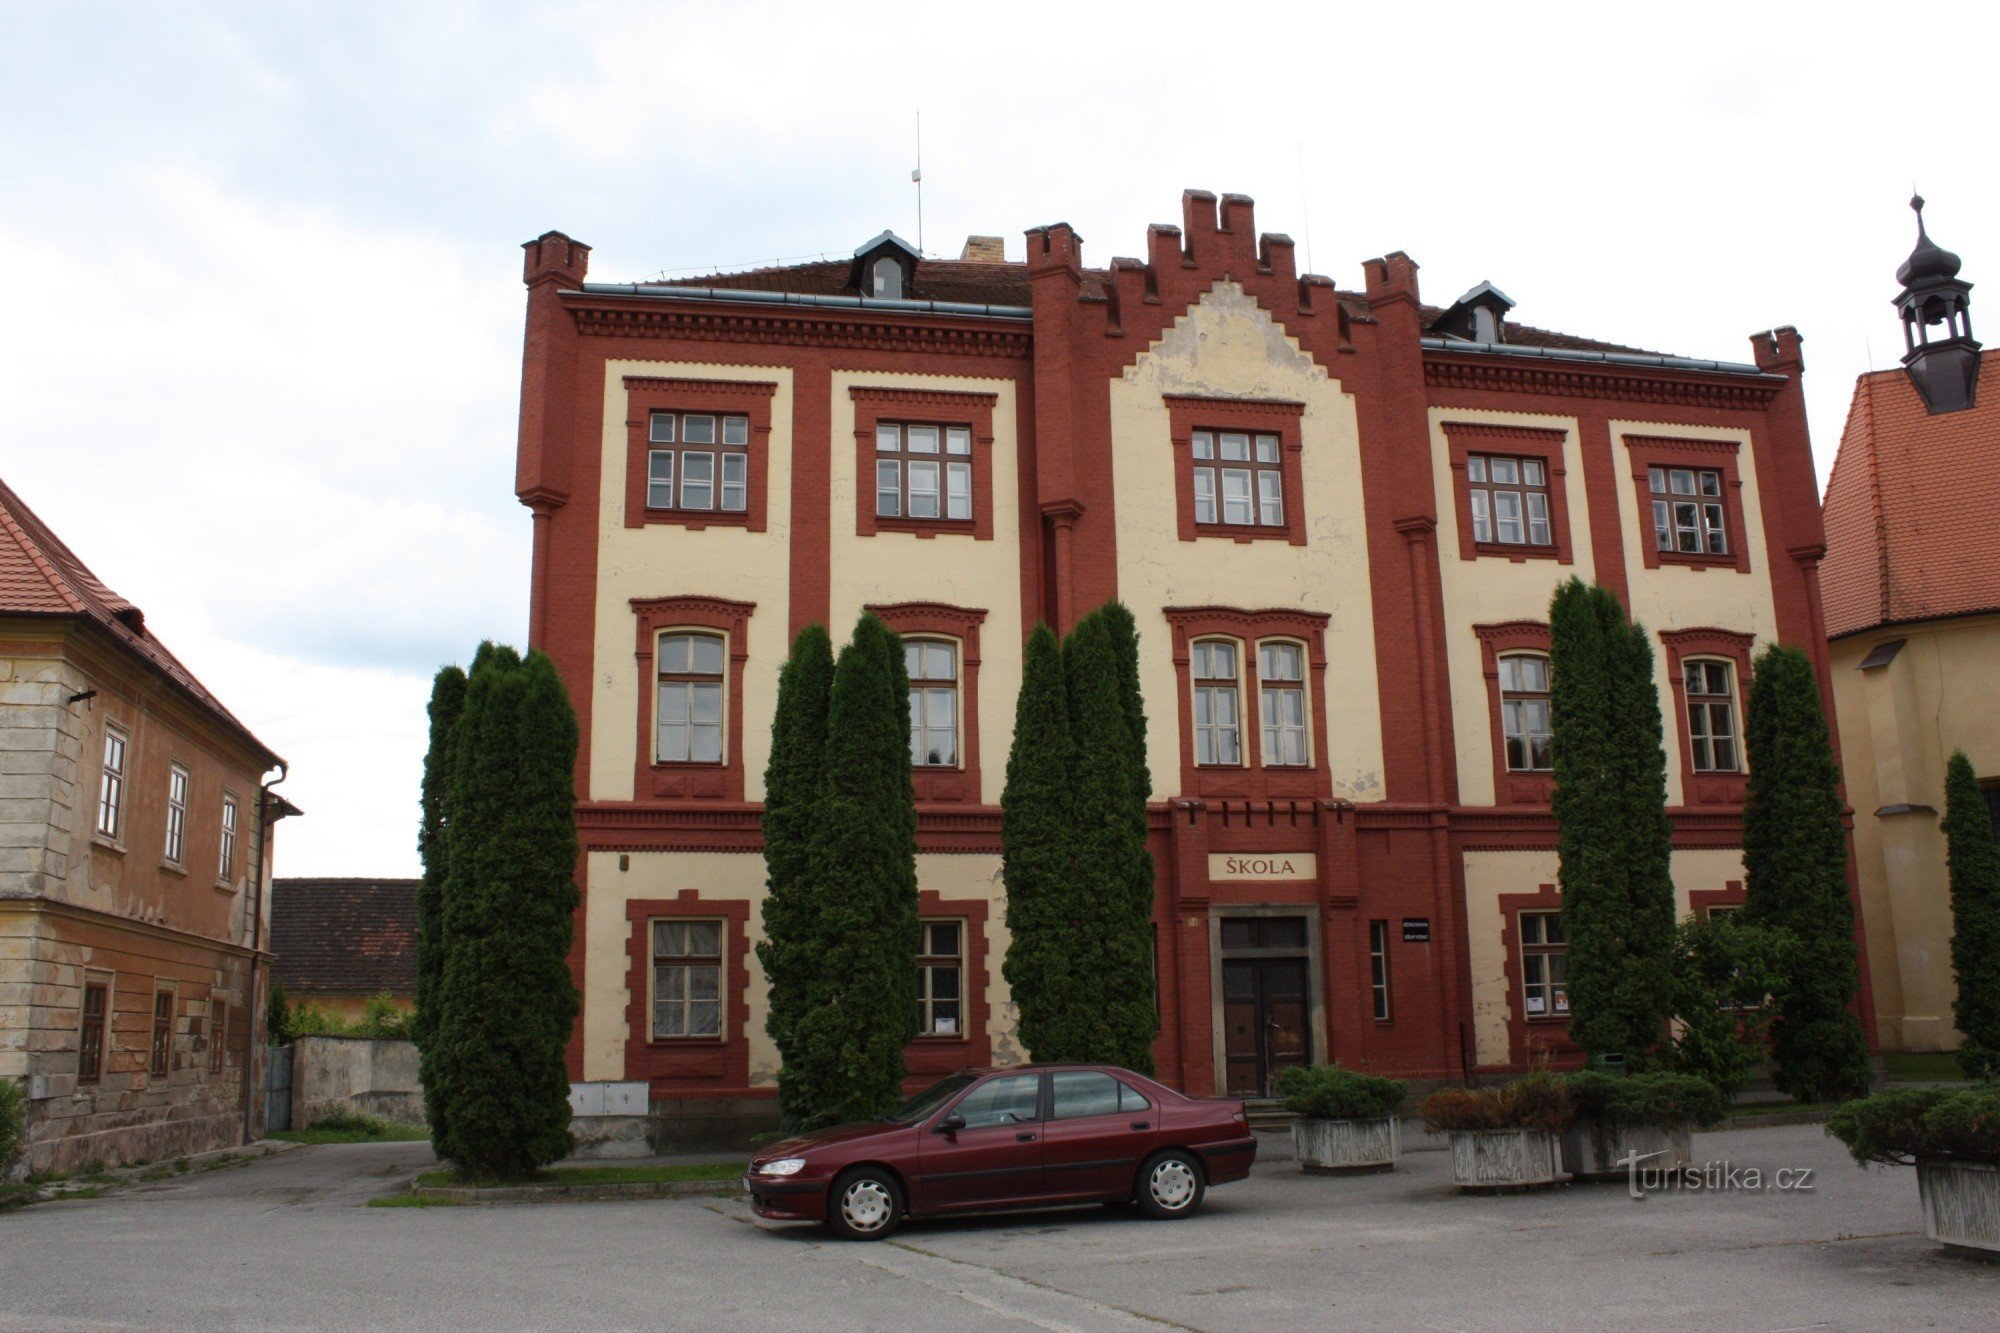 Clădirea neogotică a vechii școli din Netolice din cartierul bisericii Sf. Wenceslas